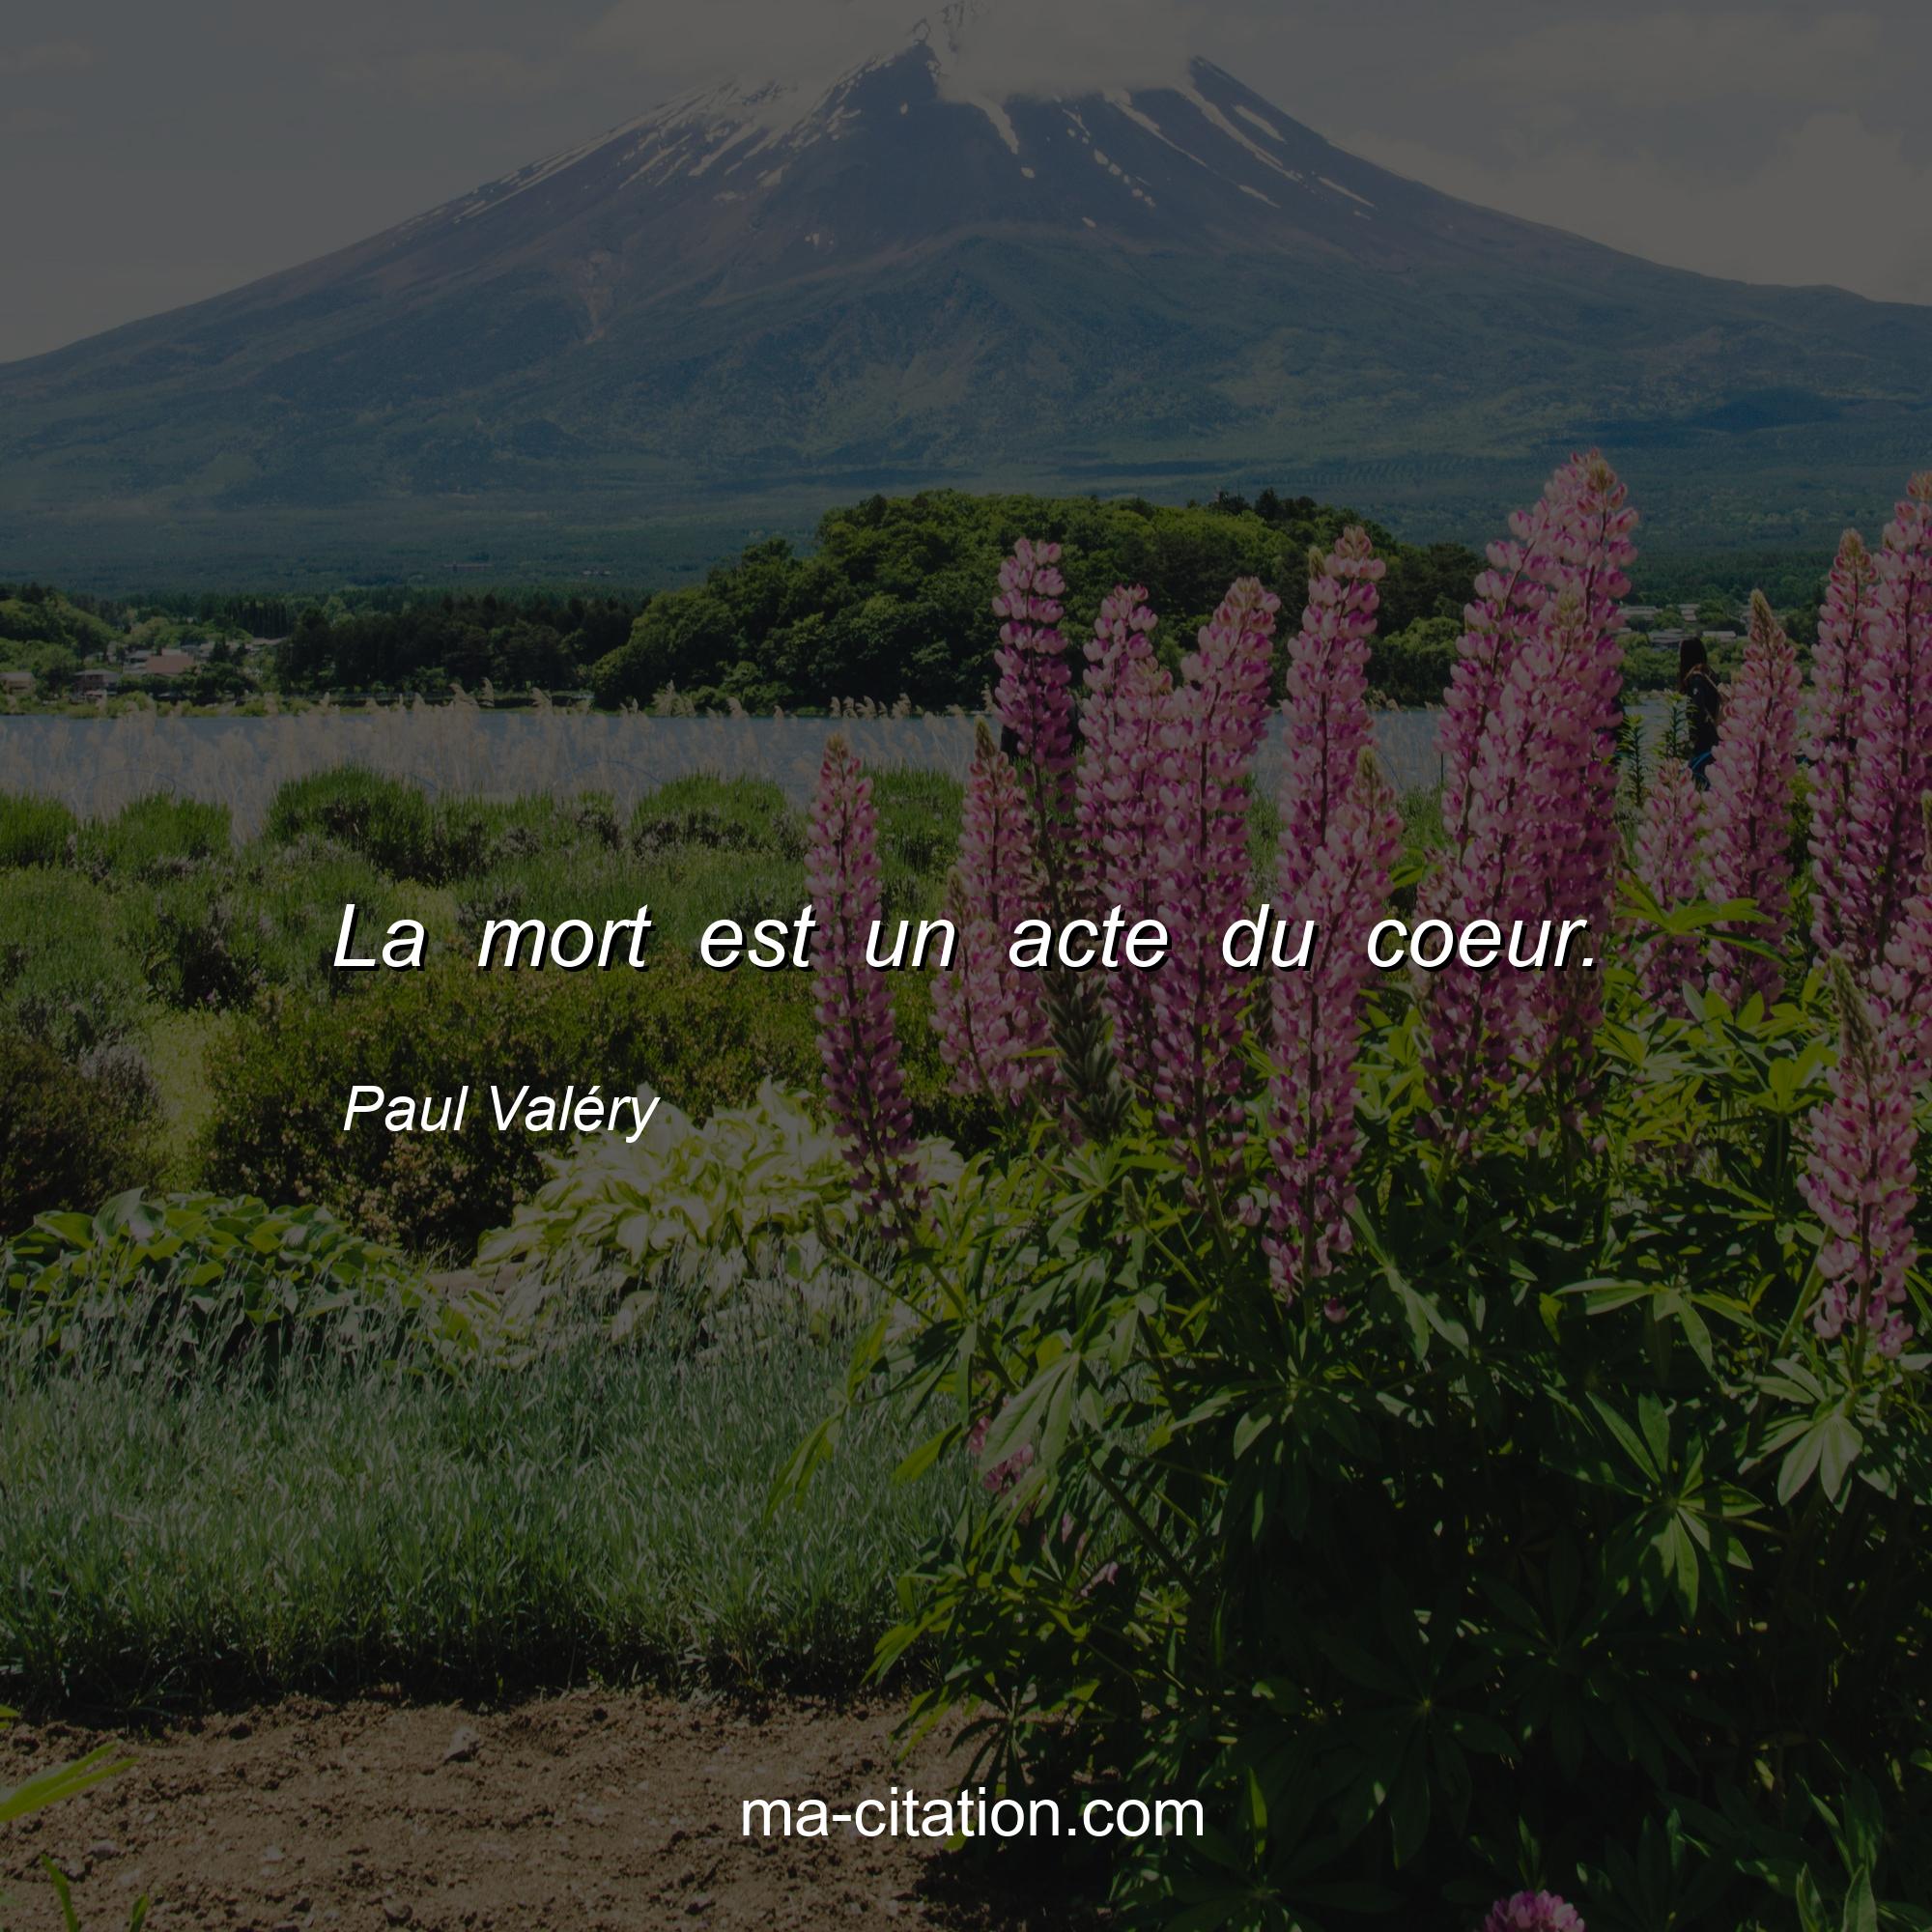 Paul Valéry : La mort est un acte du coeur.